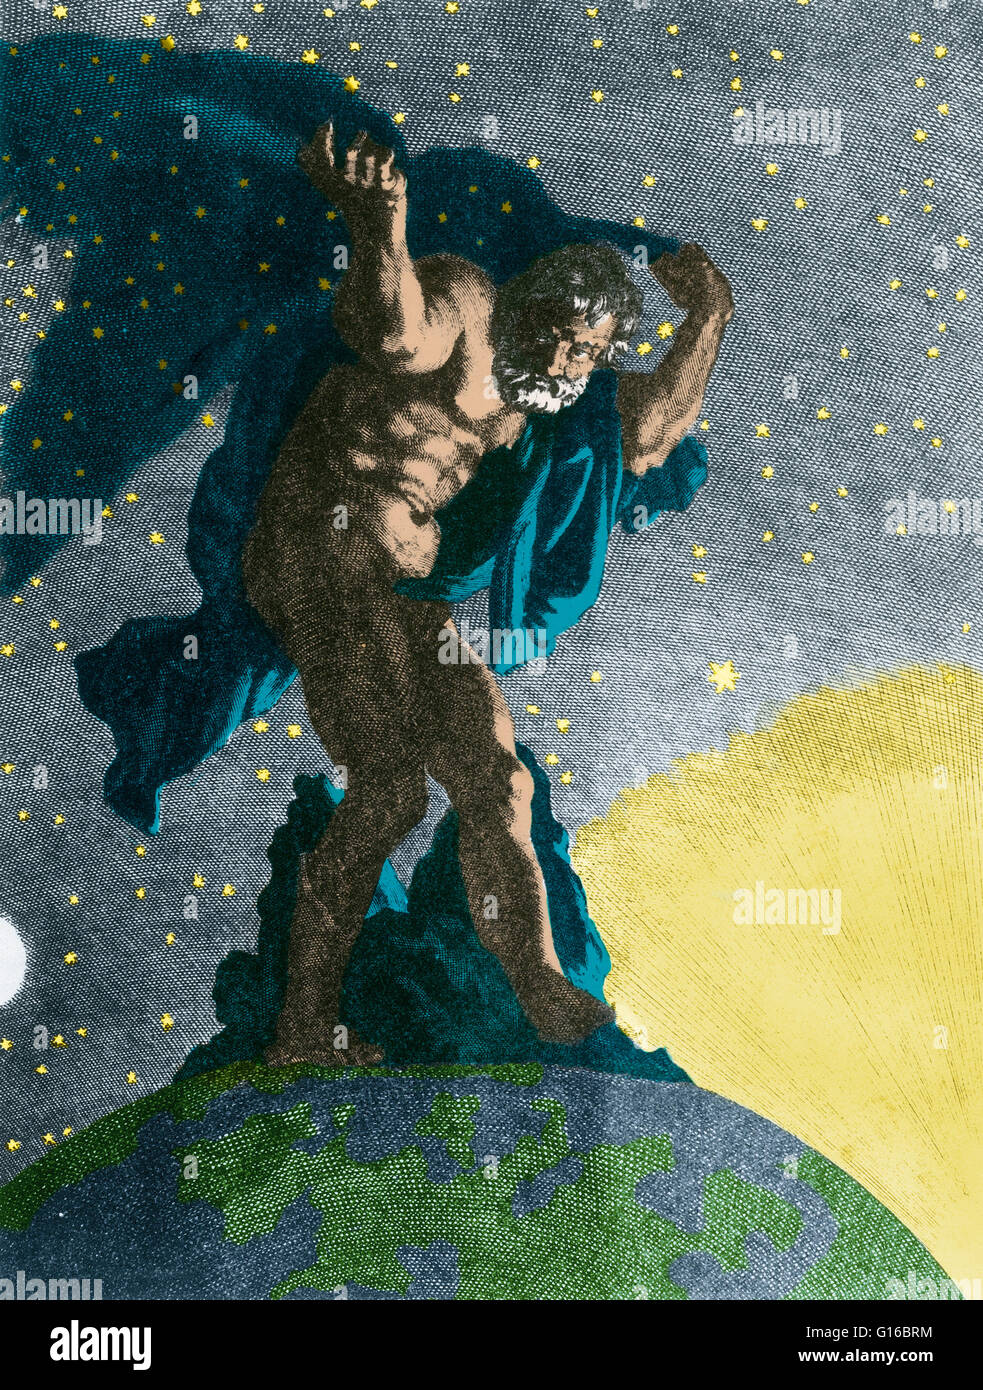 Miglioramento del colore di "Atlas supporta il cielo sulle sue spalle' da Bernard Picart (1731). In classico della mitologia greca, Atlas era il primordiale Titan che ha tenuto la sfera celeste. Egli è anche il titan di astronomia e di navigazione. Atlas e il suo bro Foto Stock